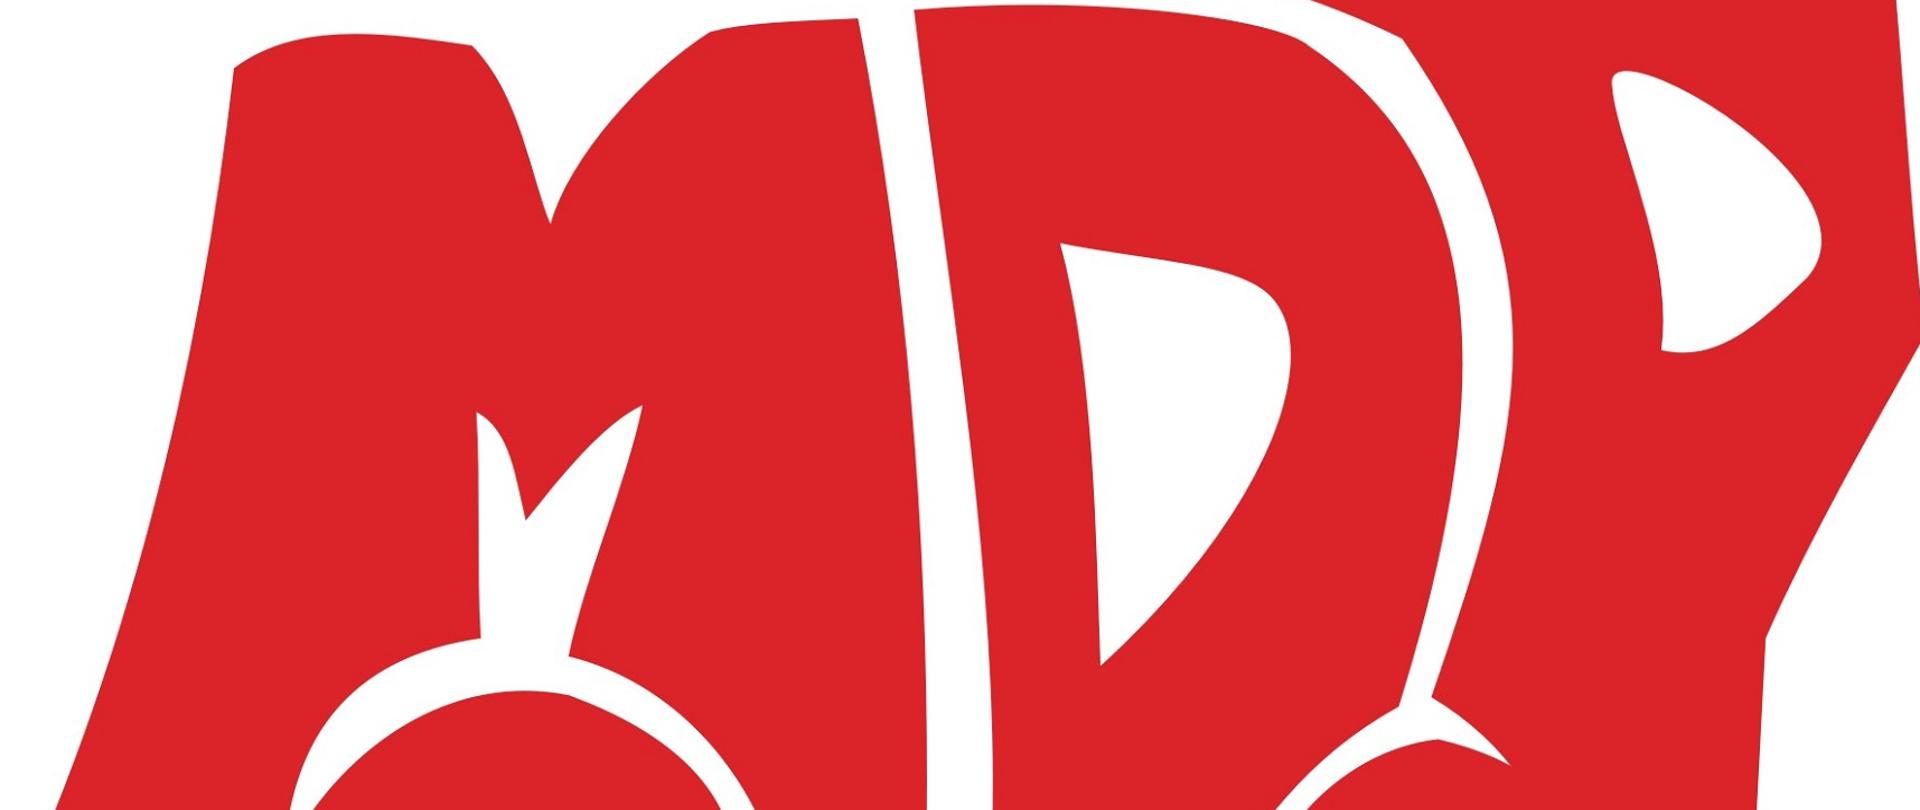 Zdjęcie obrazuje litery MDP w czerwonym kolorze na białym tle